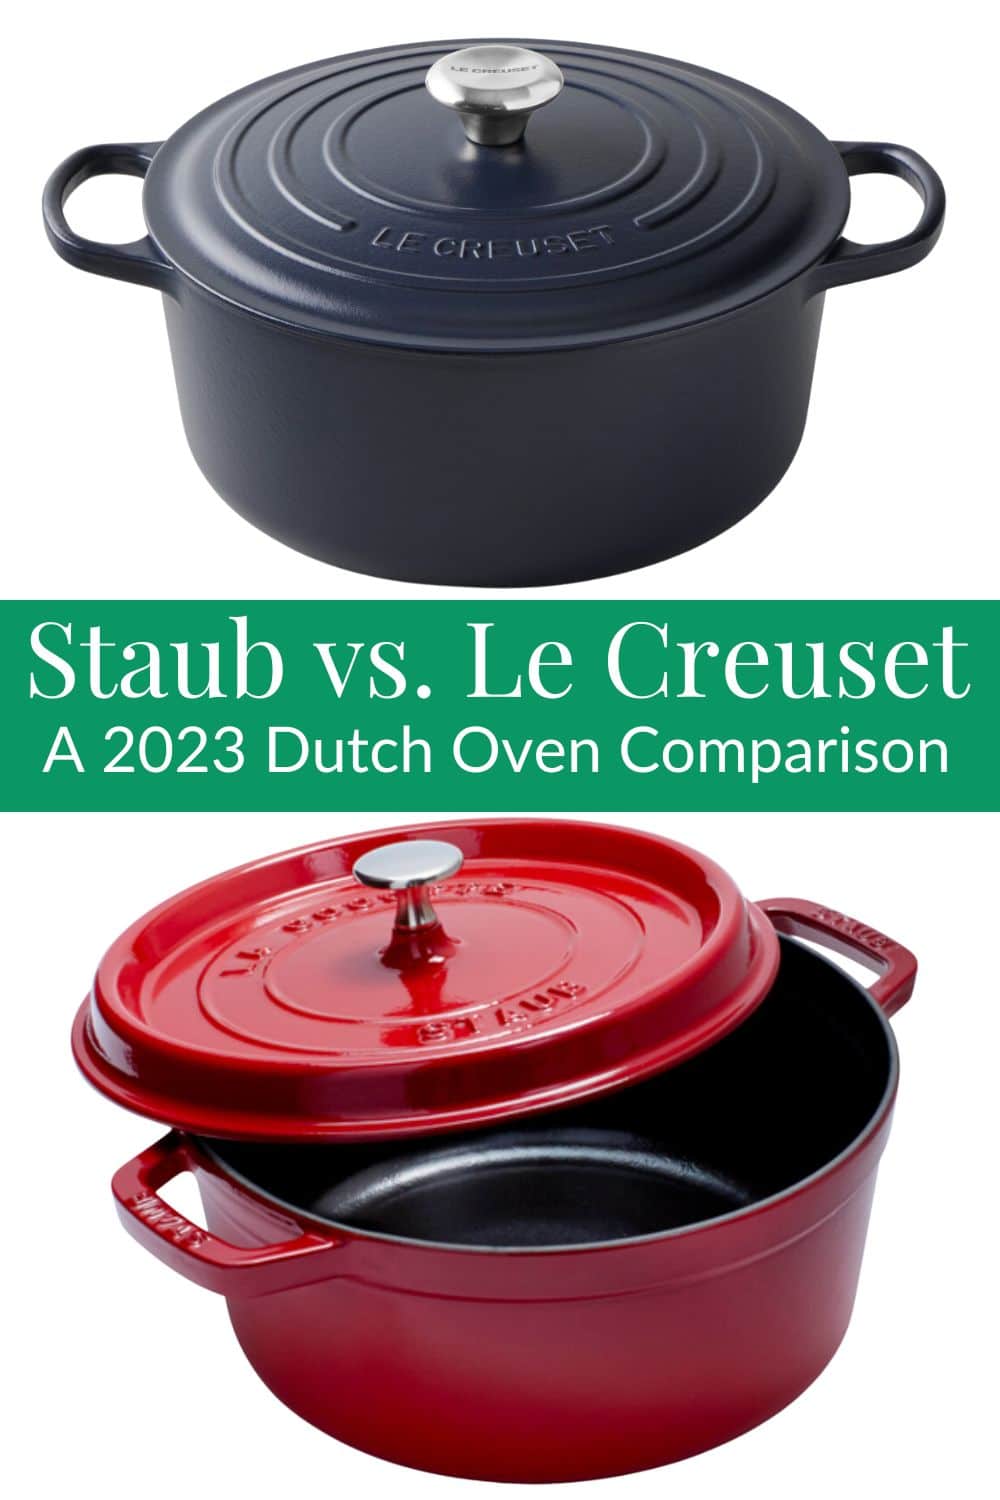 Staub vs. Le Creuset? 2023 Dutch Oven Comparison